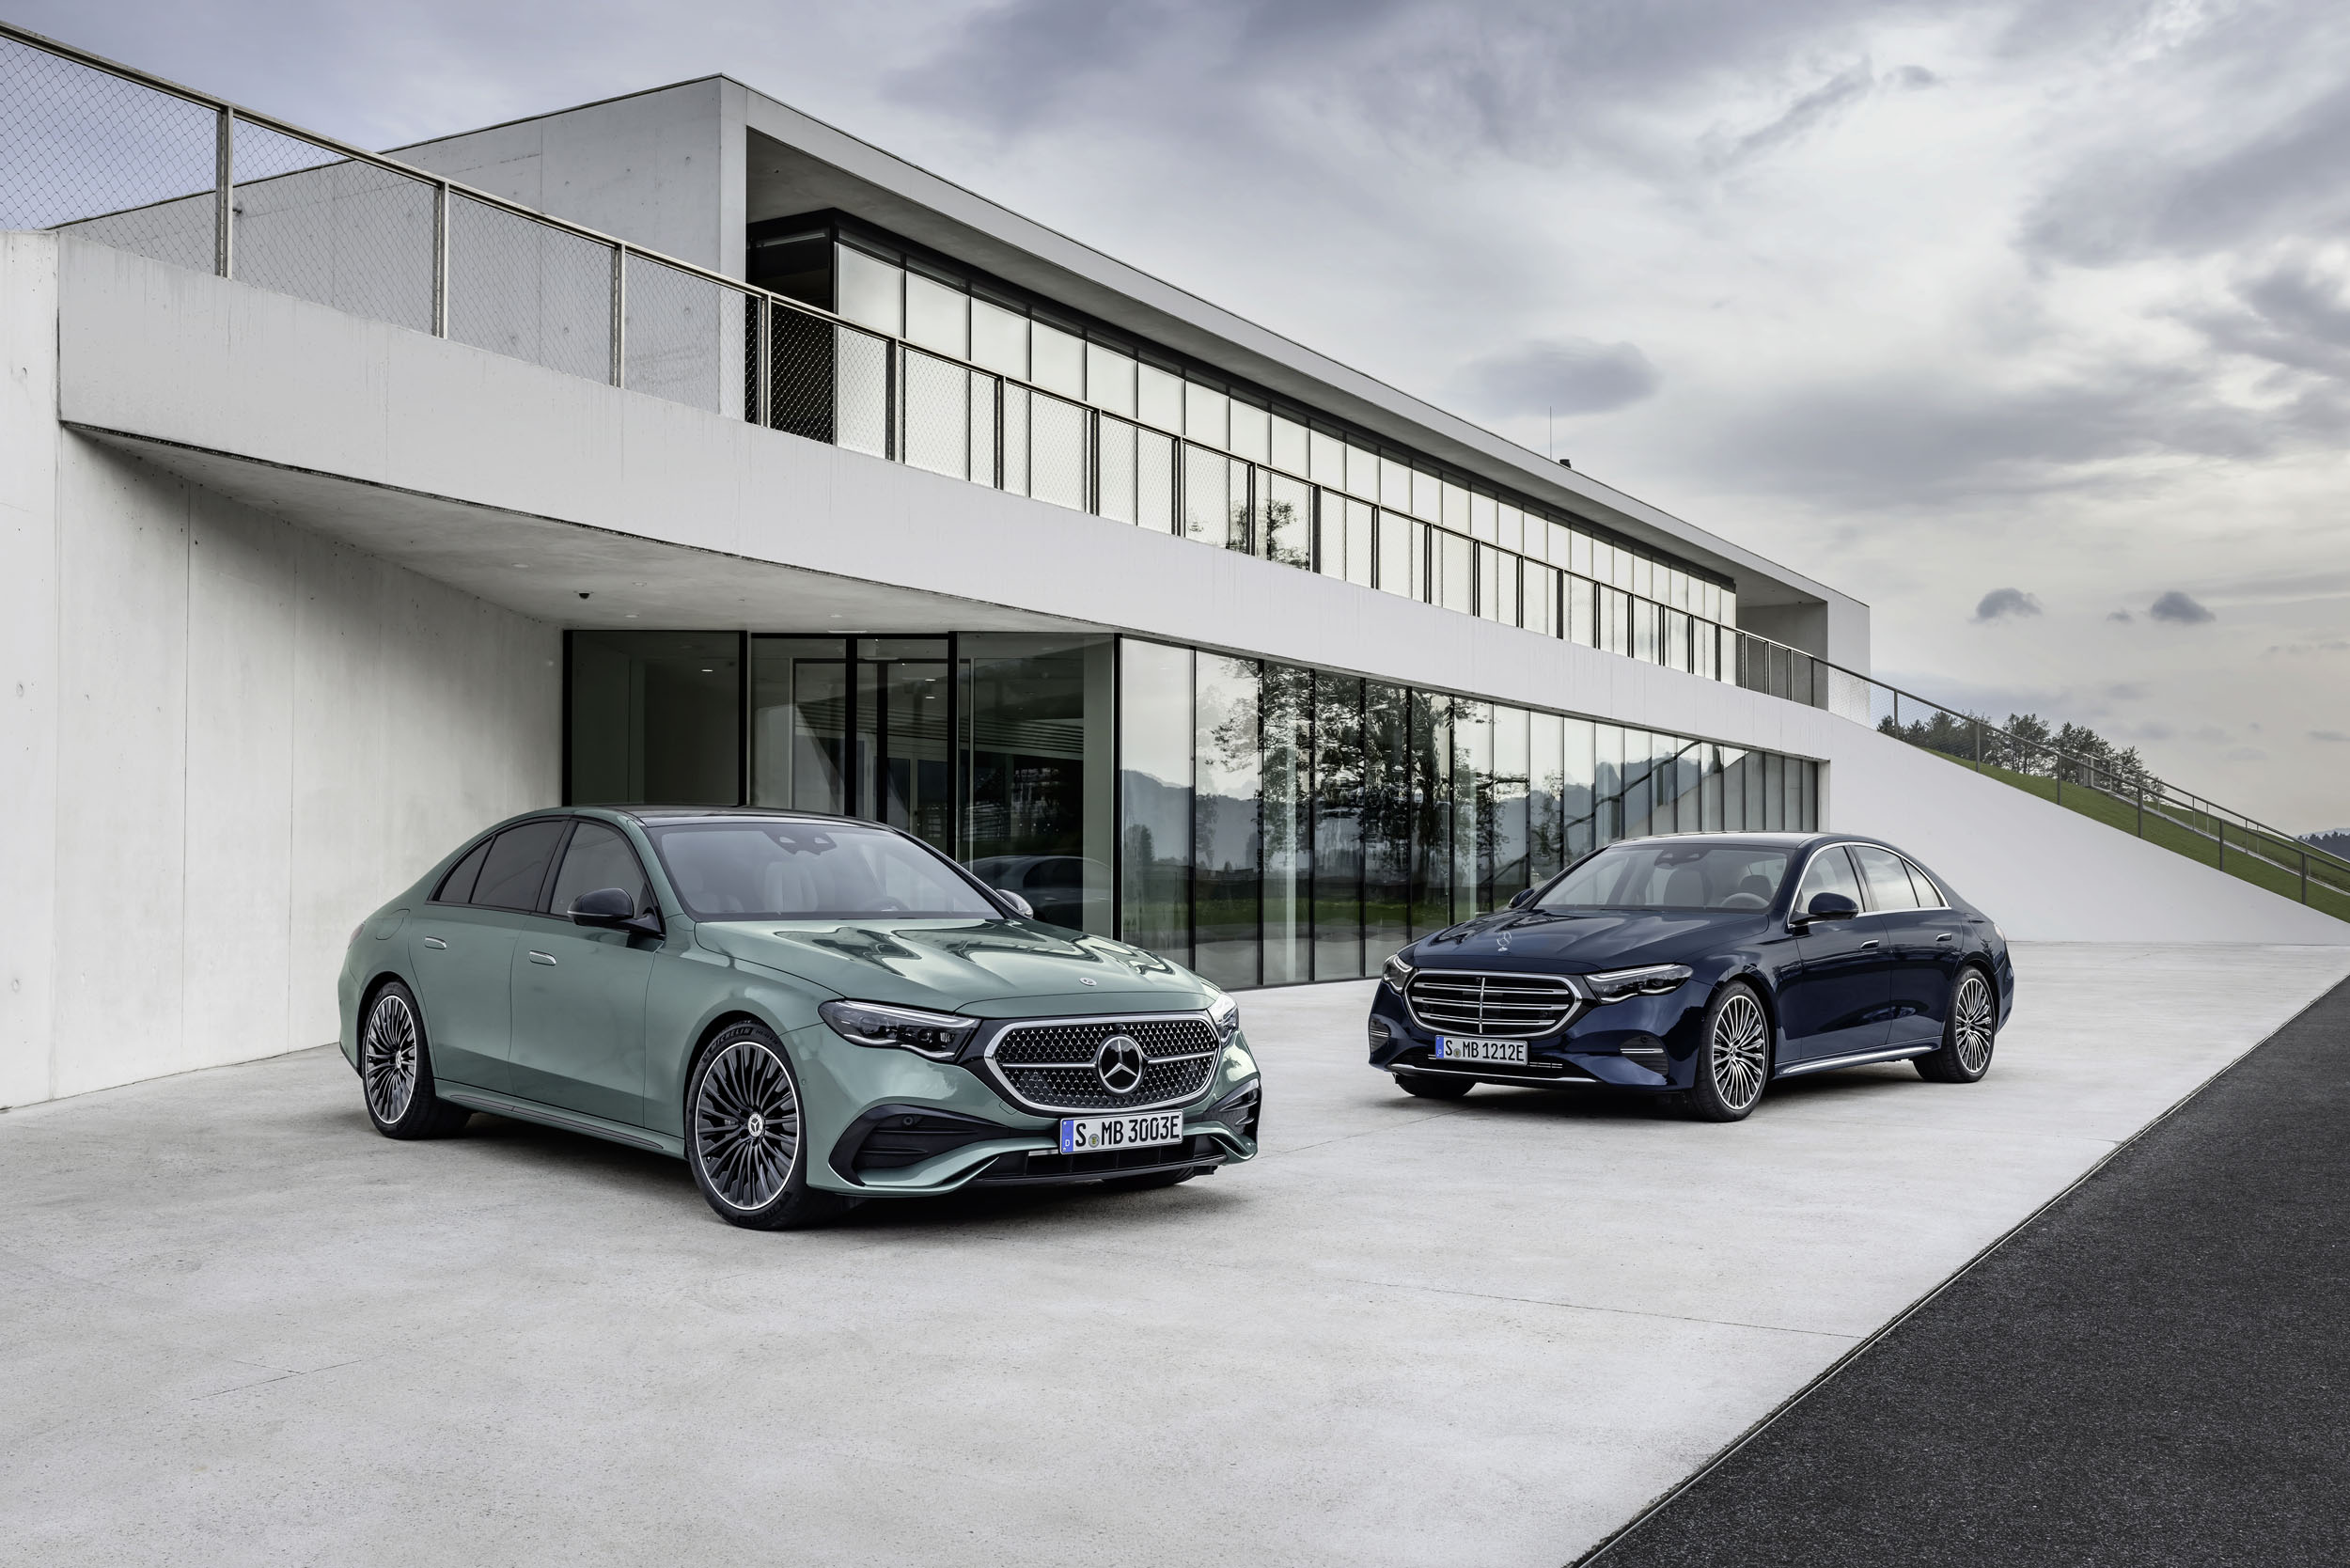 Mercedes-Benz E-Class Sedan: Models, Generations and Details